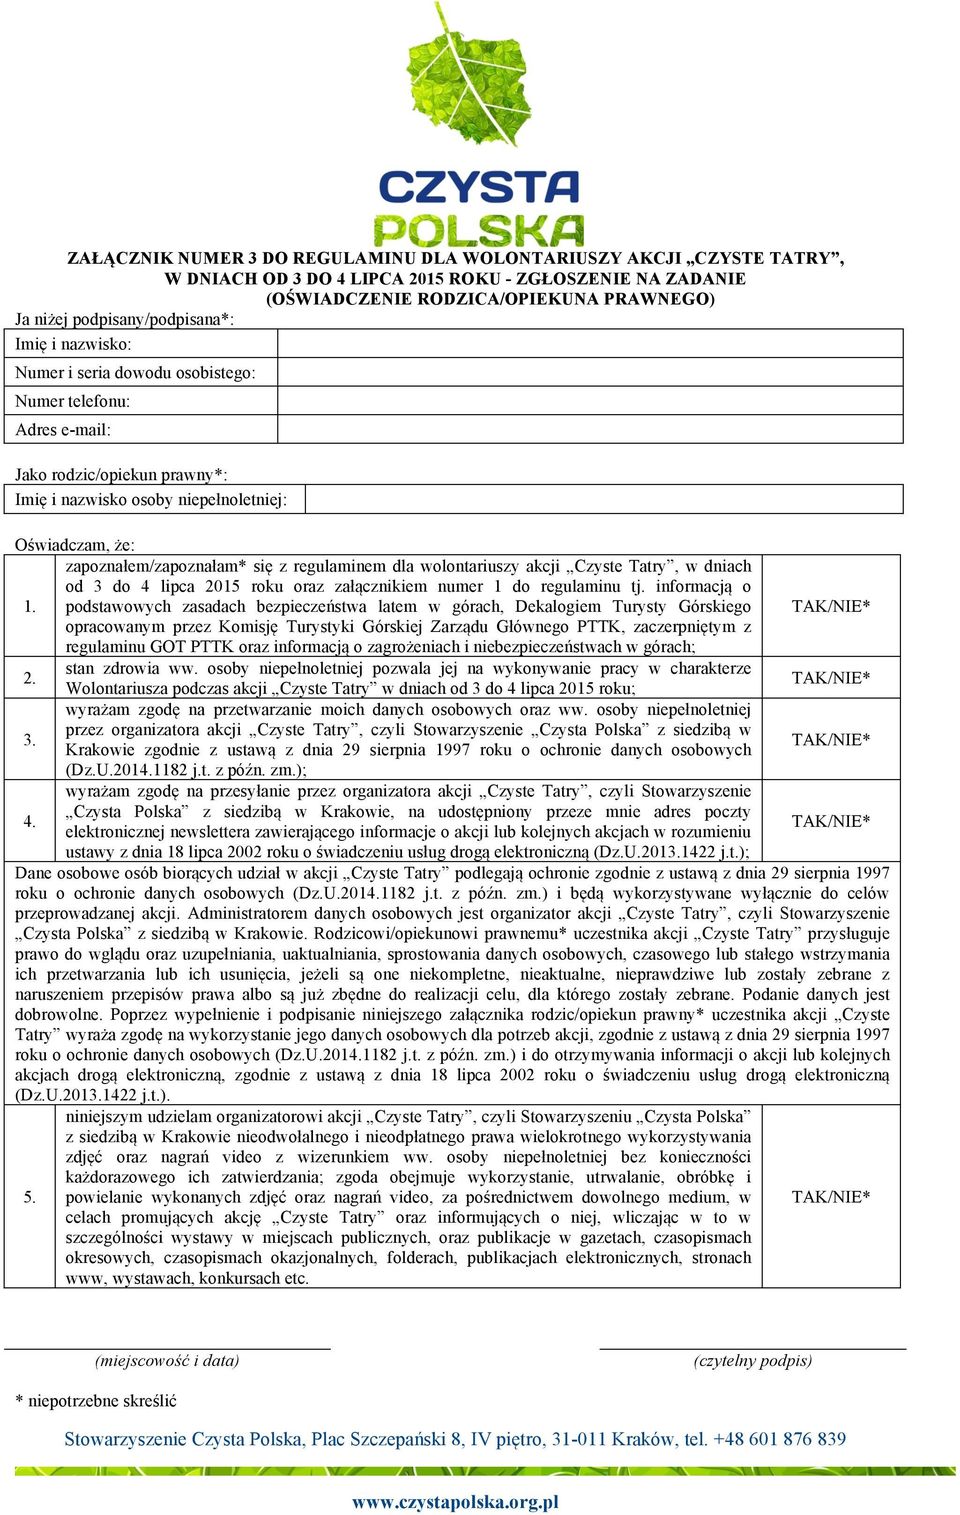 zapoznałem/zapoznałam* się z regulaminem dla wolontariuszy akcji Czyste Tatry, w dniach od 3 do 4 lipca 2015 roku oraz załącznikiem numer 1 do regulaminu tj. informacją o 1.